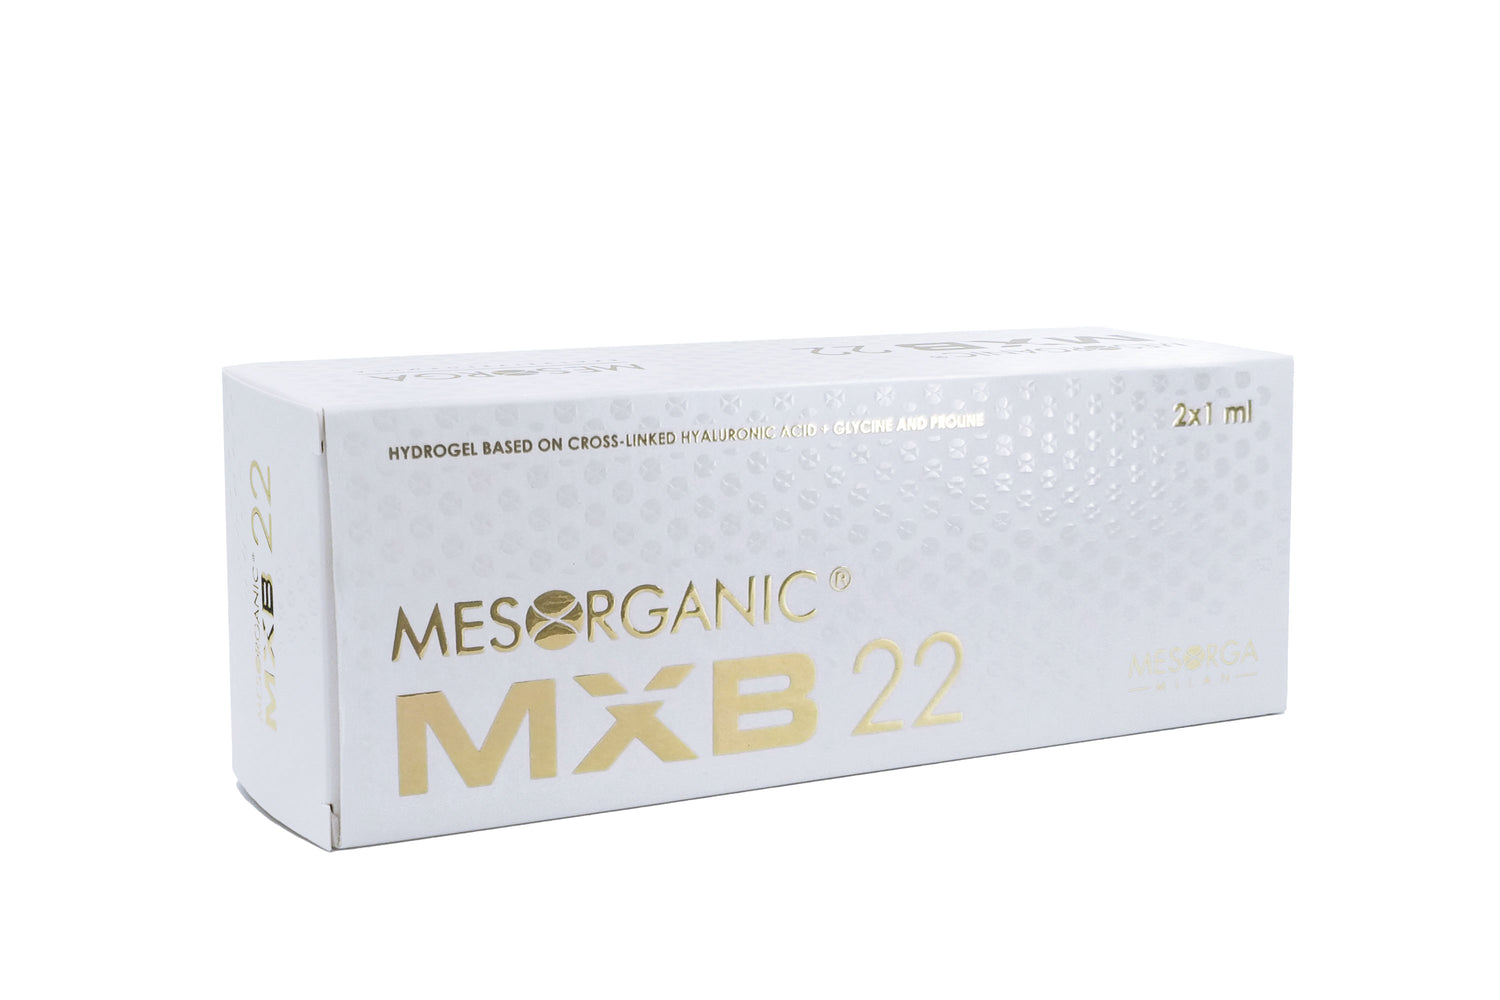 Mesorganic MXB 22 - Acido Ialuronico Reticolato + Prolina e Glicina - Mesorga